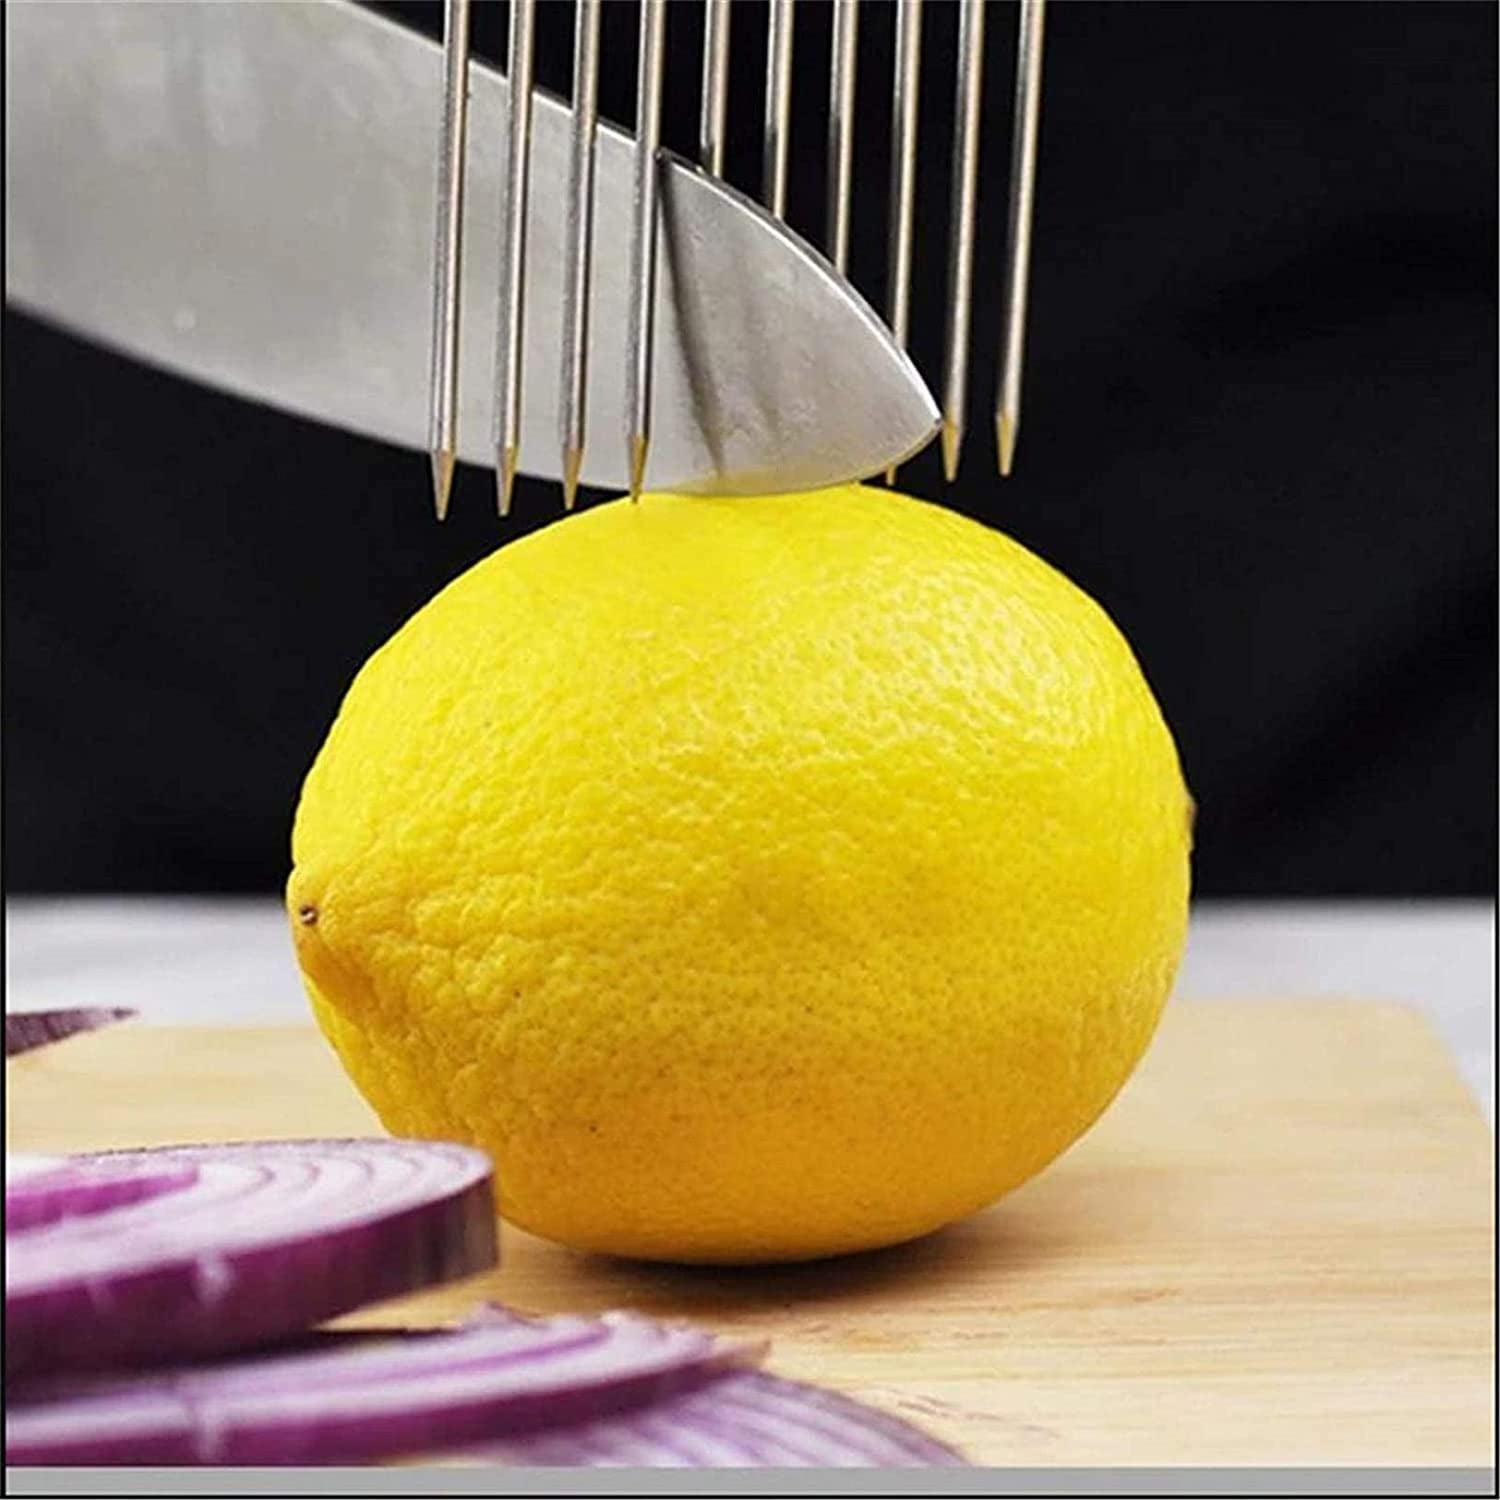 2pcs Onion Holder Slicer, Stainless Steel Tomato Lemon Potato Vegetable Holder Slicer Cutter Tool for Kitchen Worker Slicing